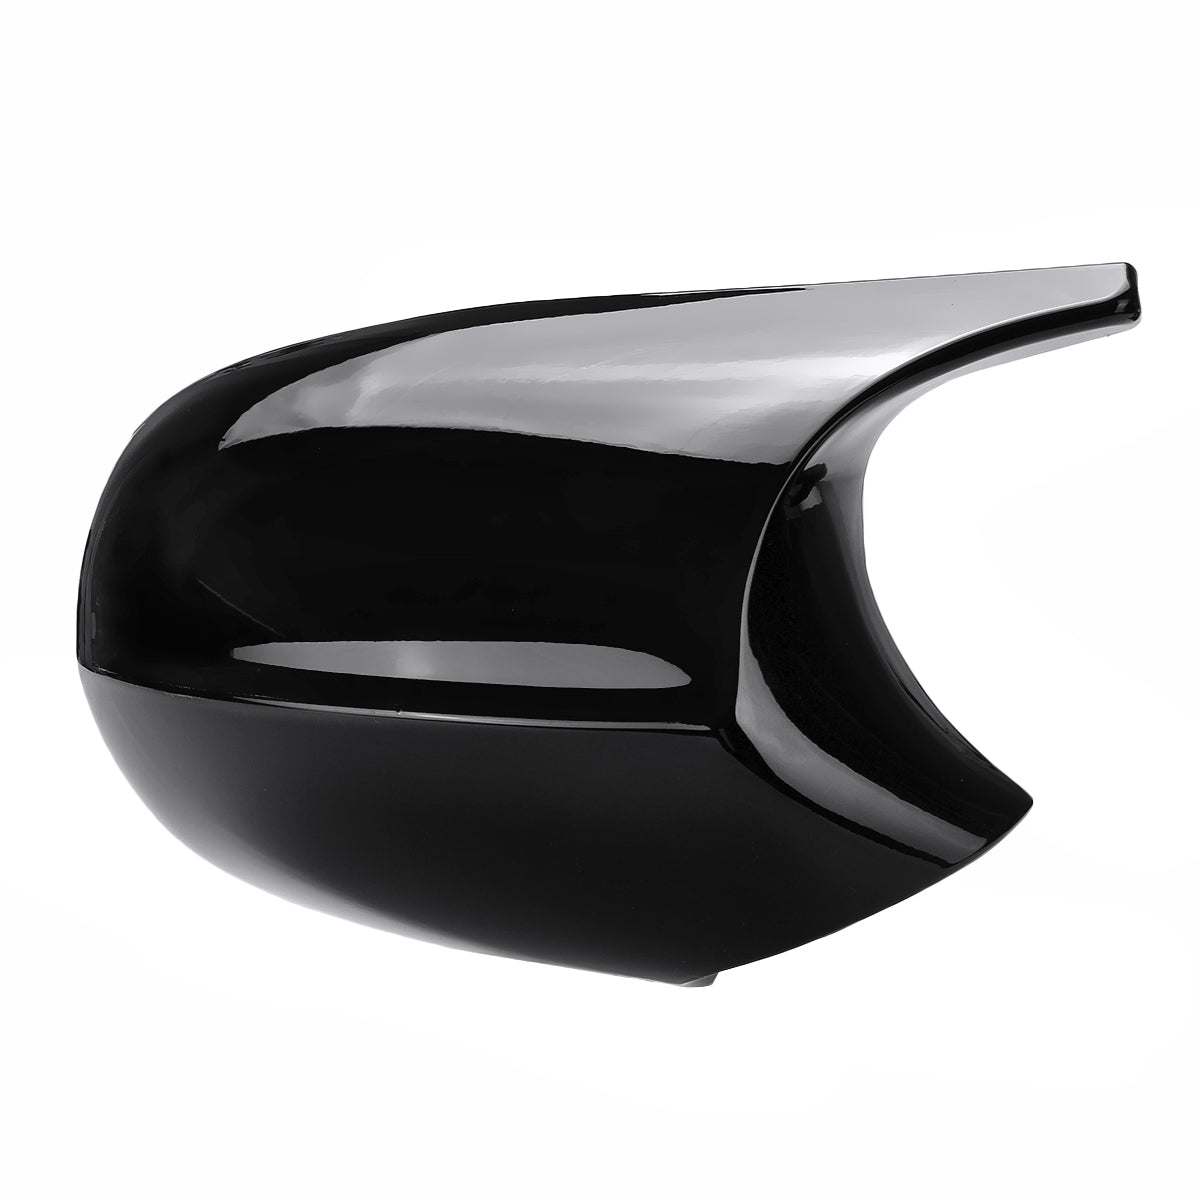 Car Rear View Mirror Cap Cover Replacement Left & Right Glossy Black For BMW E90 E91 2008-2011 E92 E93 2010-2013 M3 Style - Auto GoShop